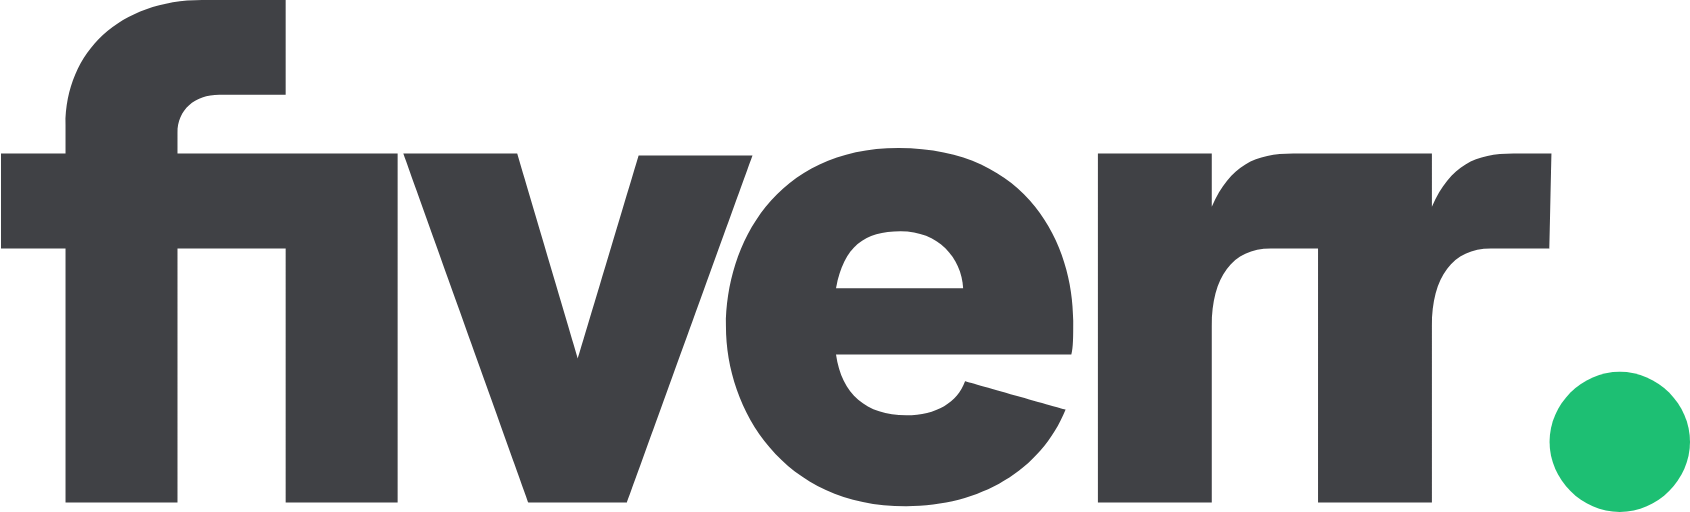 Fiverr logo large (transparent PNG)